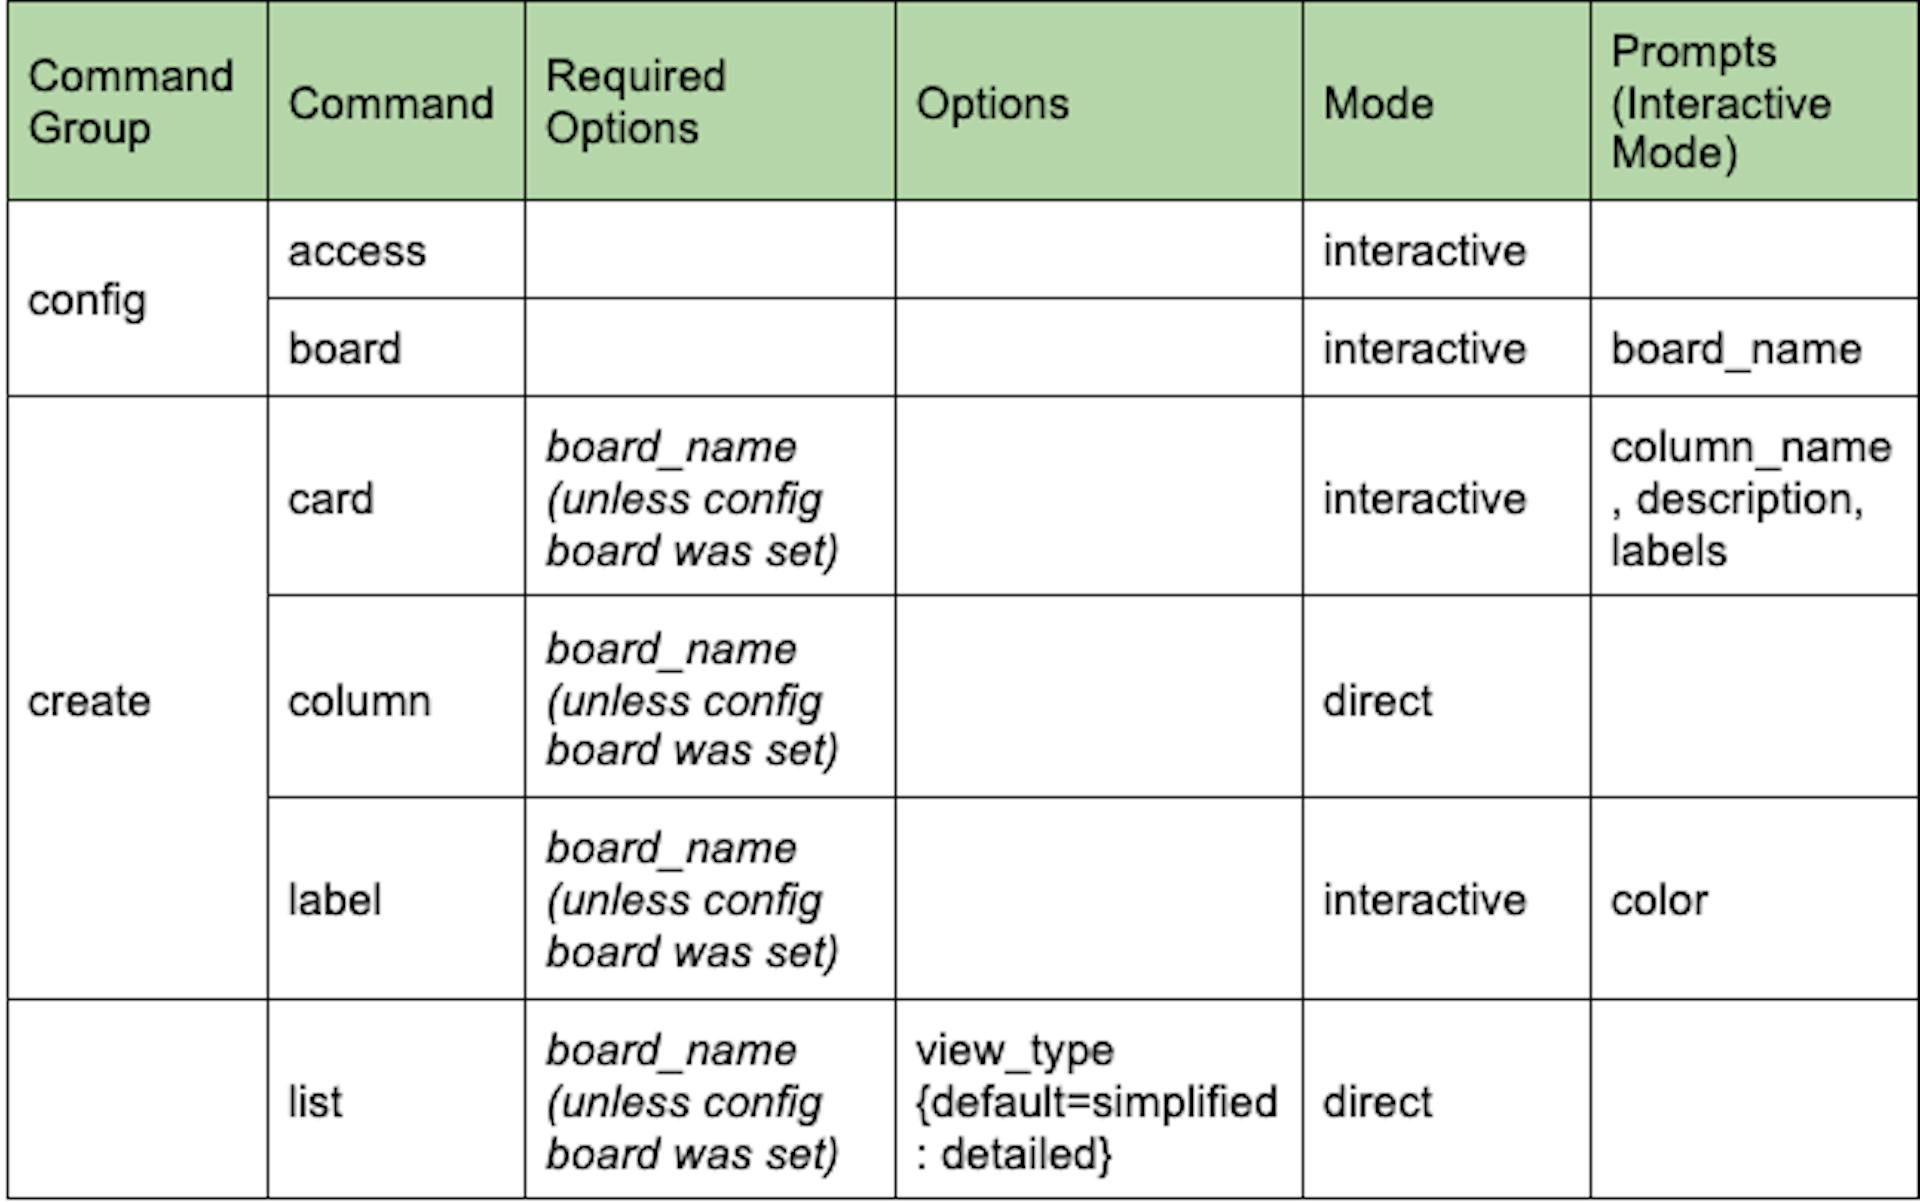 Visualização detalhada da tabela da estrutura CLI com base nos requisitos